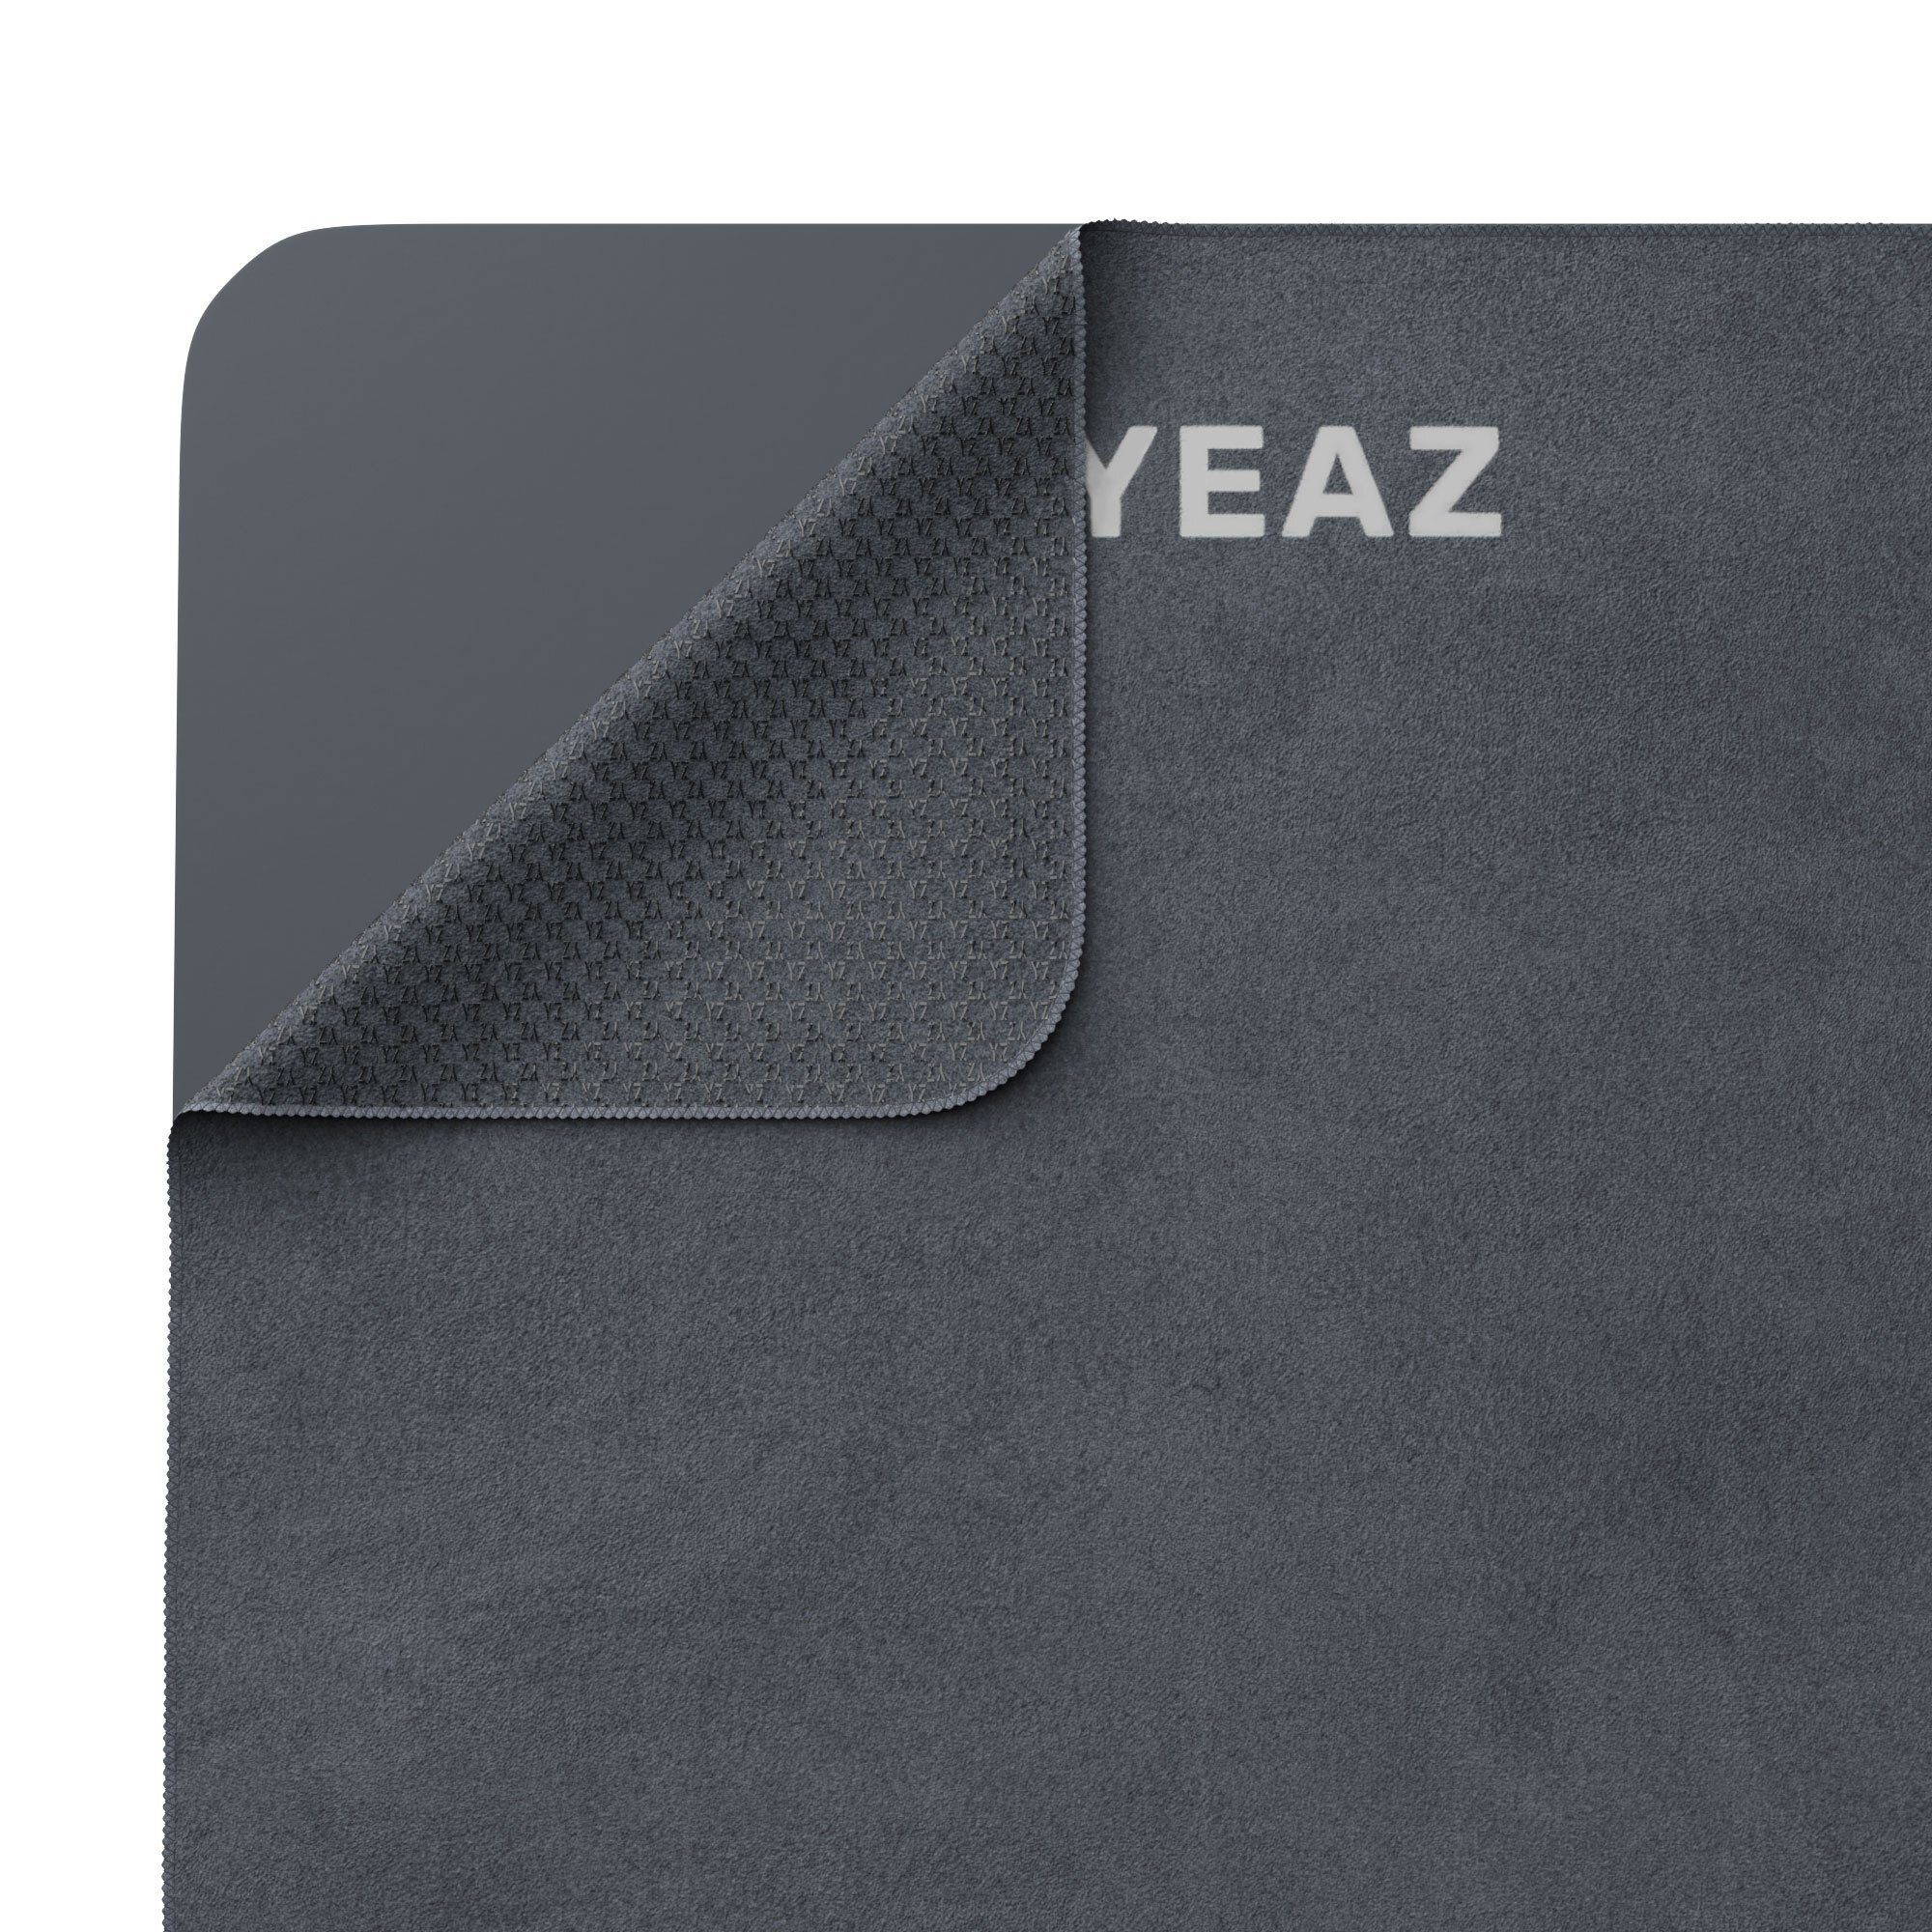 YEAZ Yogablock NEXT LEVEL set rutschfeste Oberfläche & Soft-Touch handtuch, yoga-blöcke - schwarz